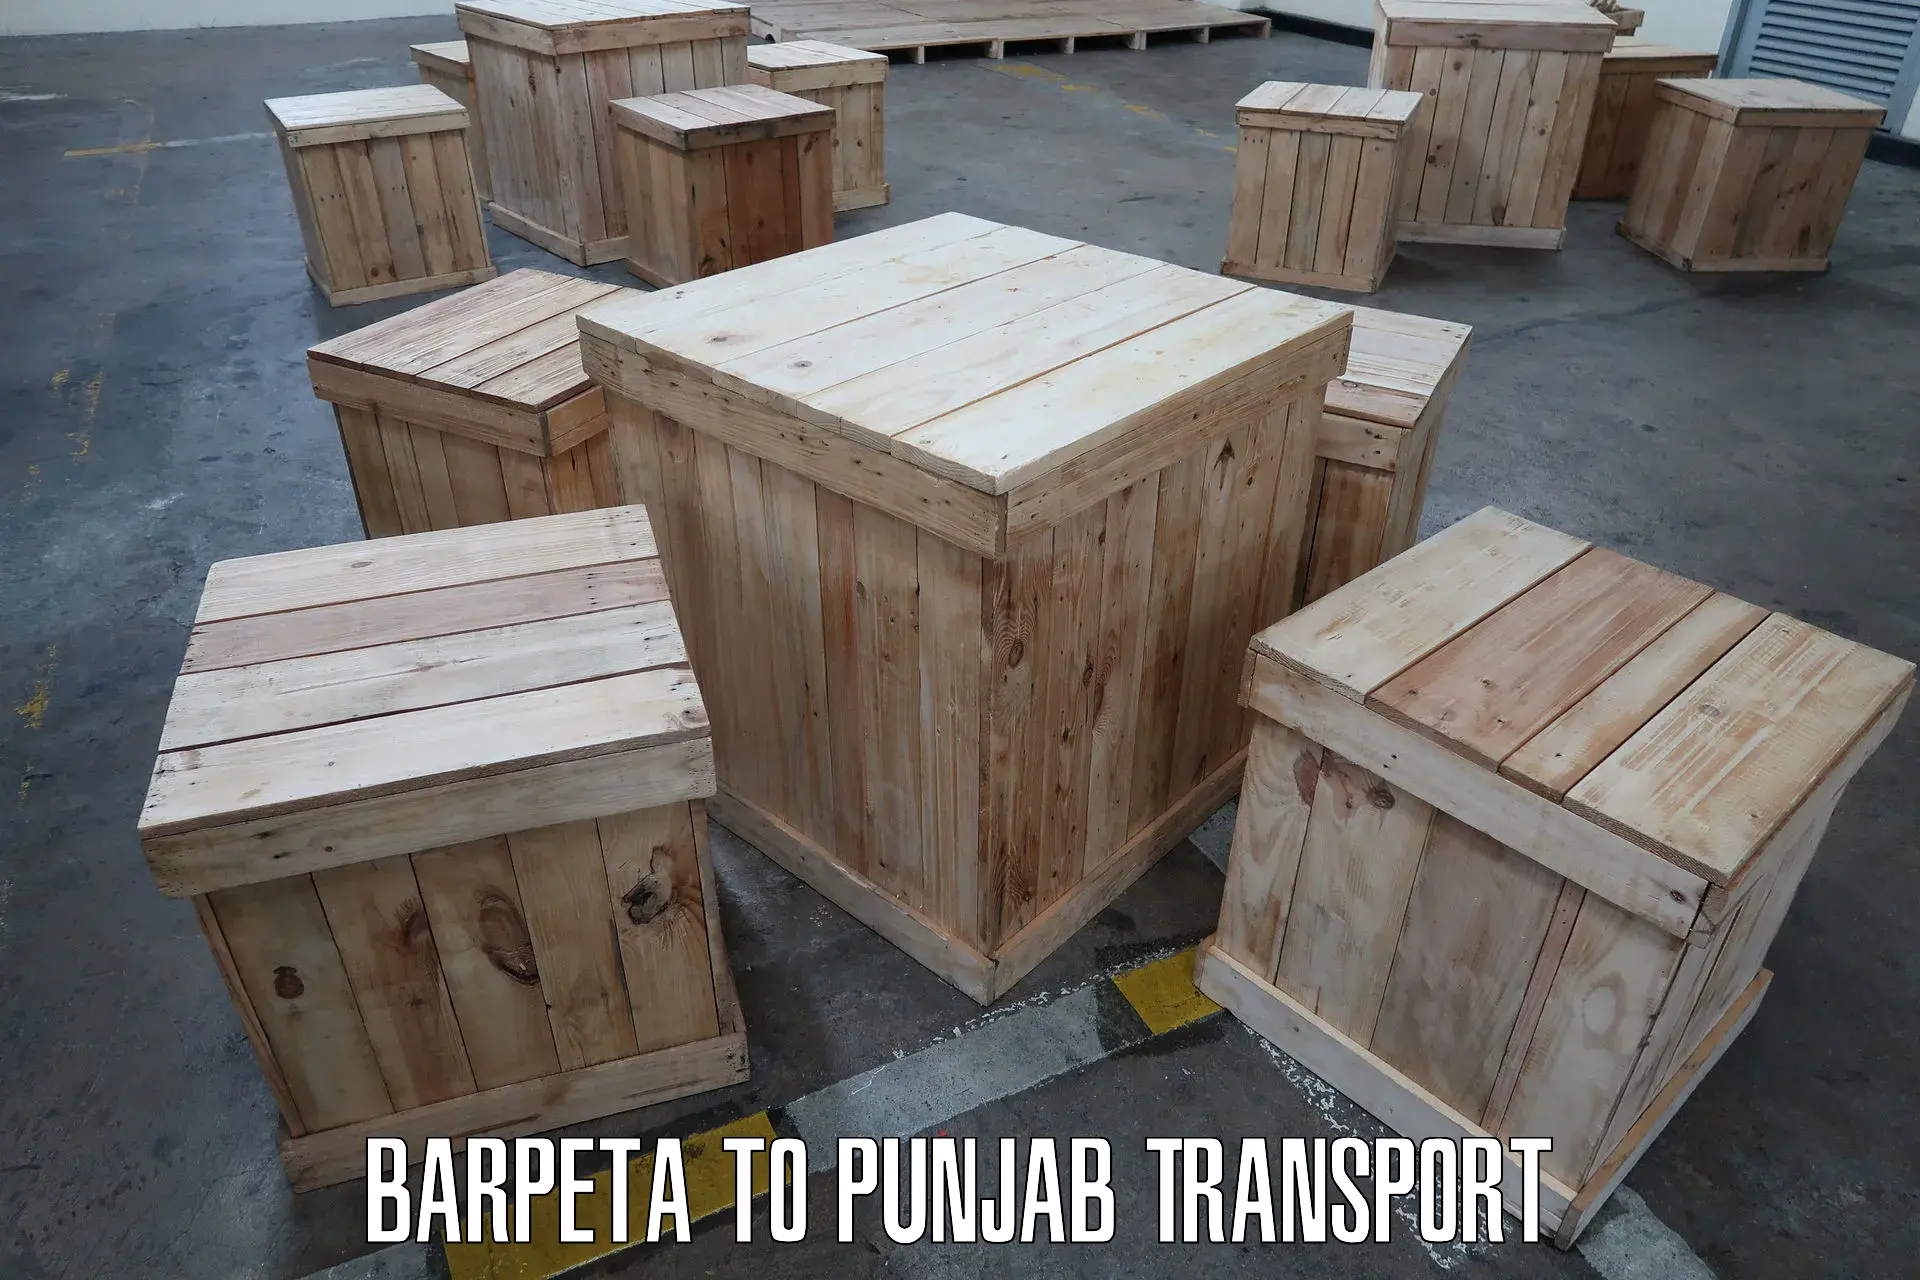 Online transport booking Barpeta to Punjab